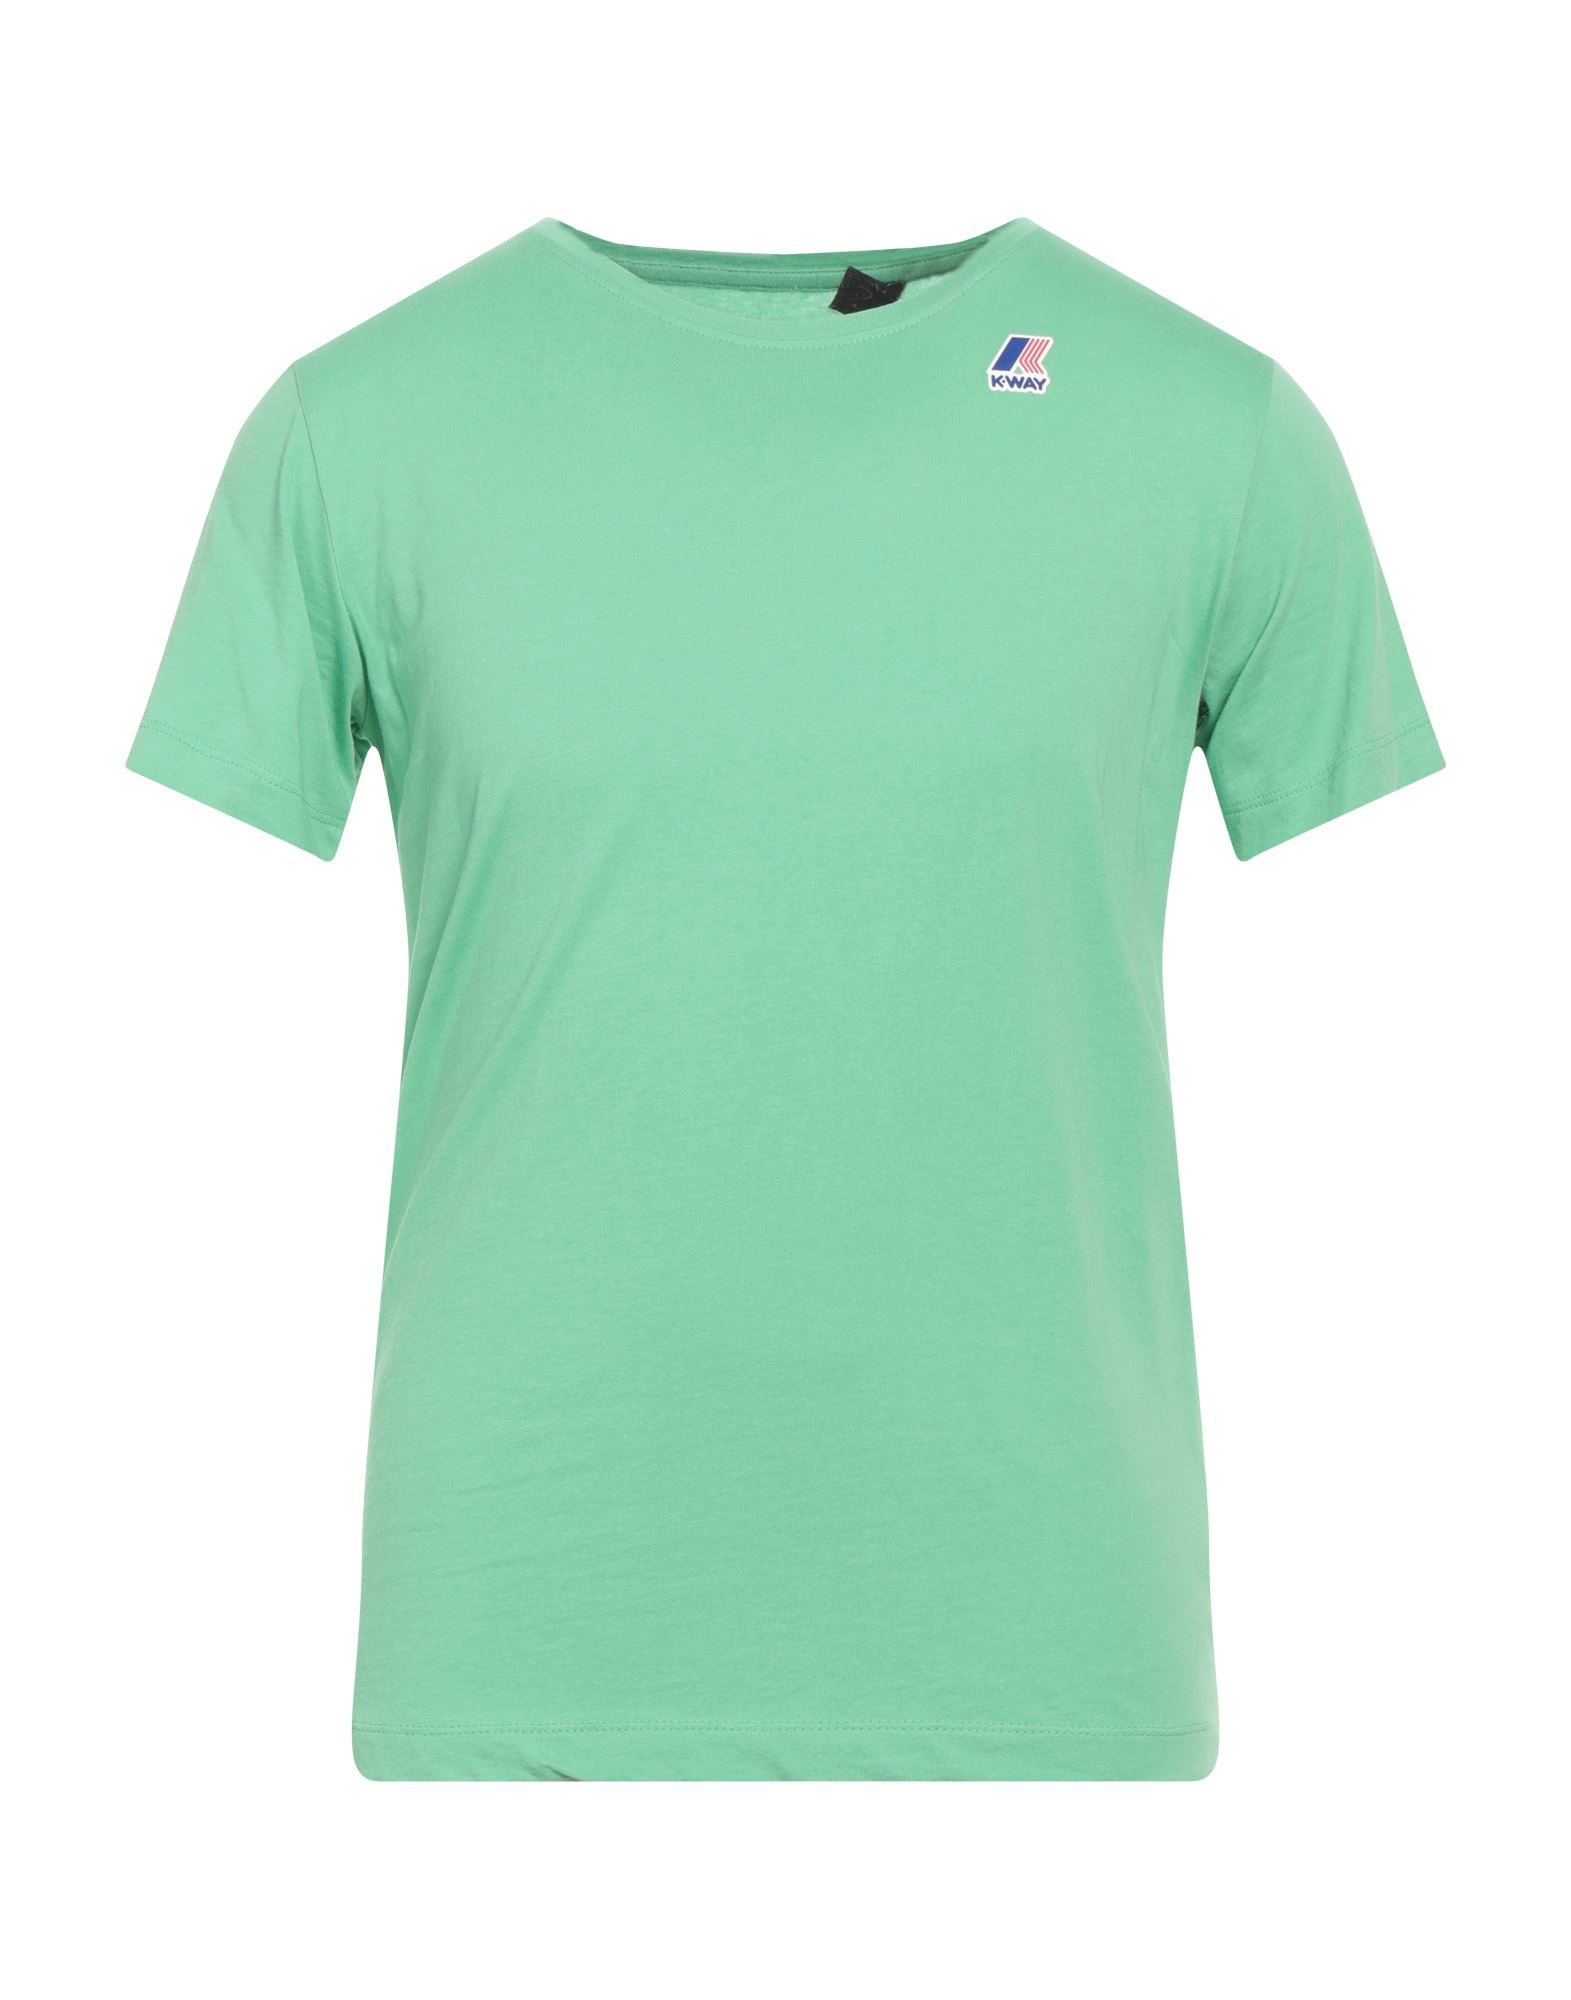 K-way Man T-shirt Light Green Size S Cotton